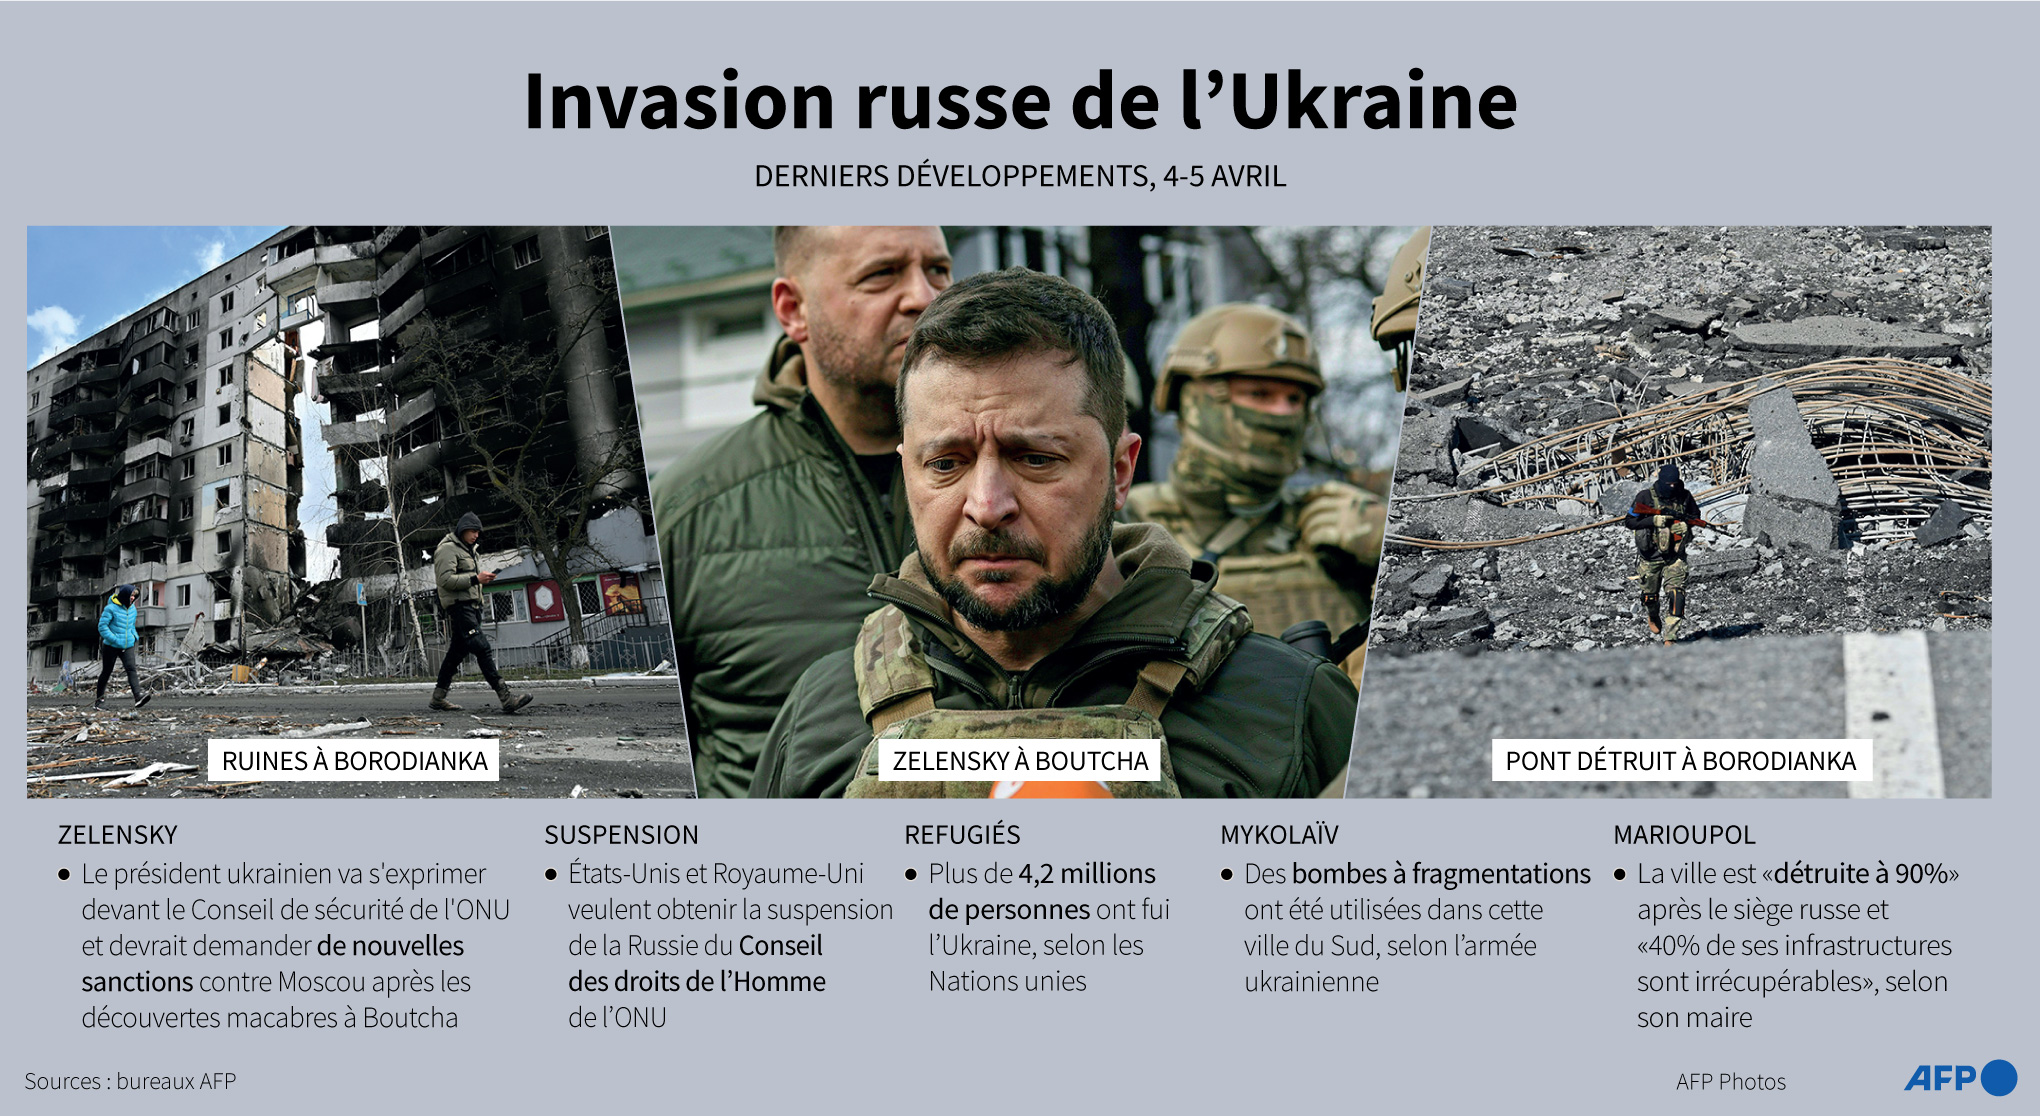 Derniers développements de l'invasion russe de l'Ukraine, avec photos